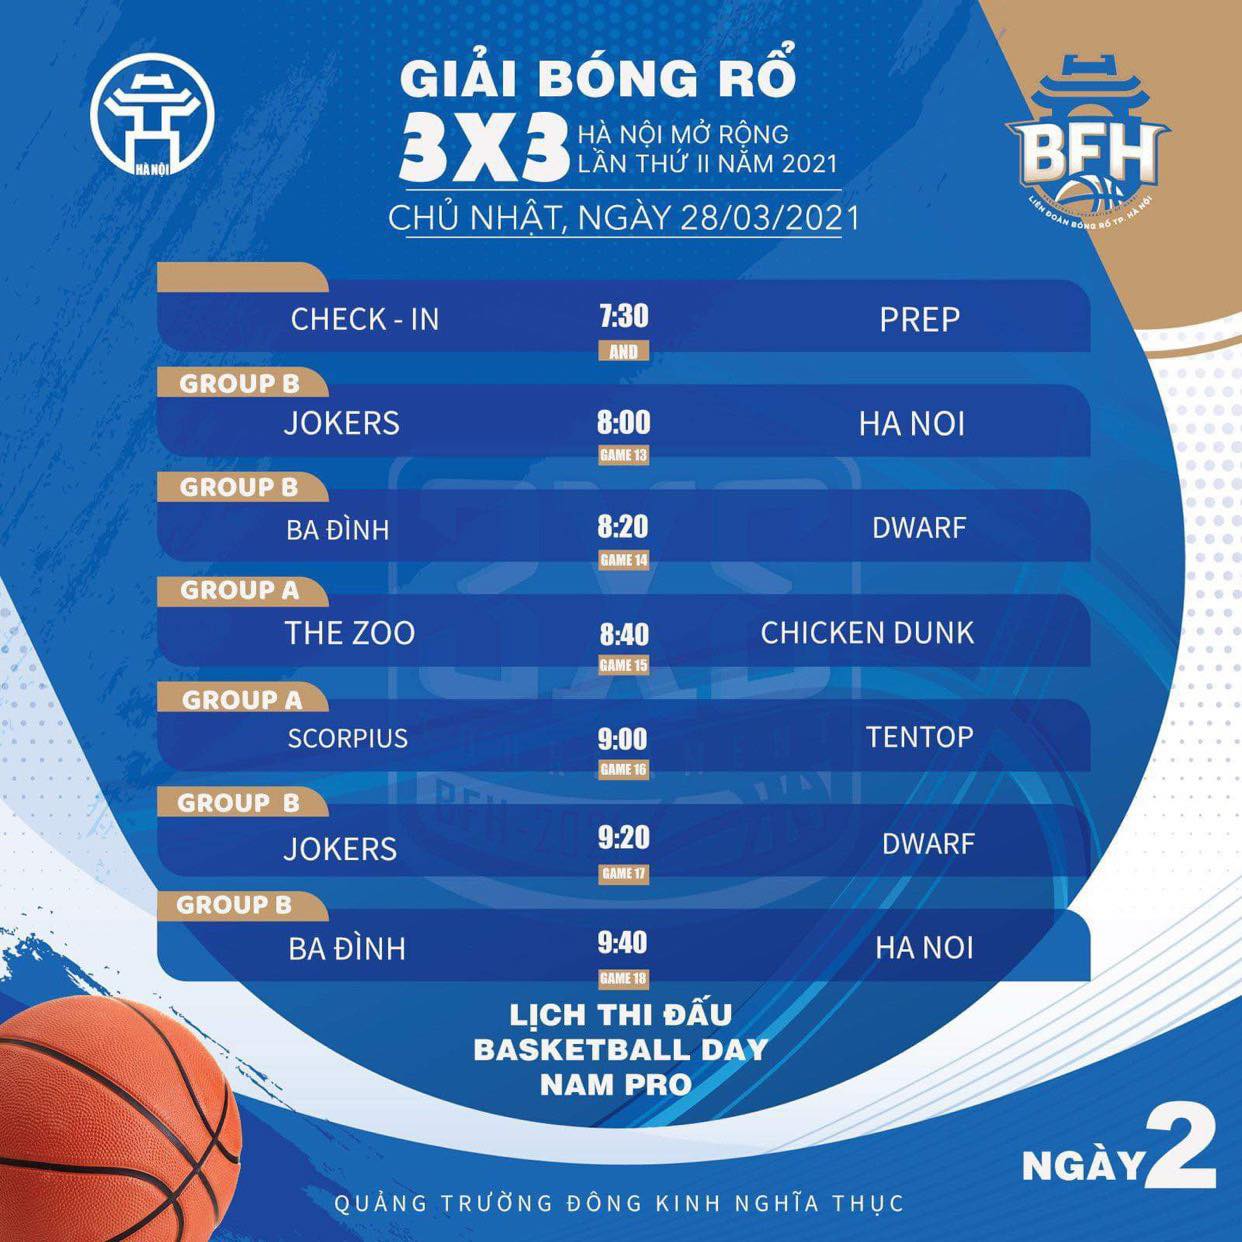 Lịch thi đấu giải bóng rổ 3x3 Hà Nội mở rộng lần 2 năm 2021 - Ảnh 6